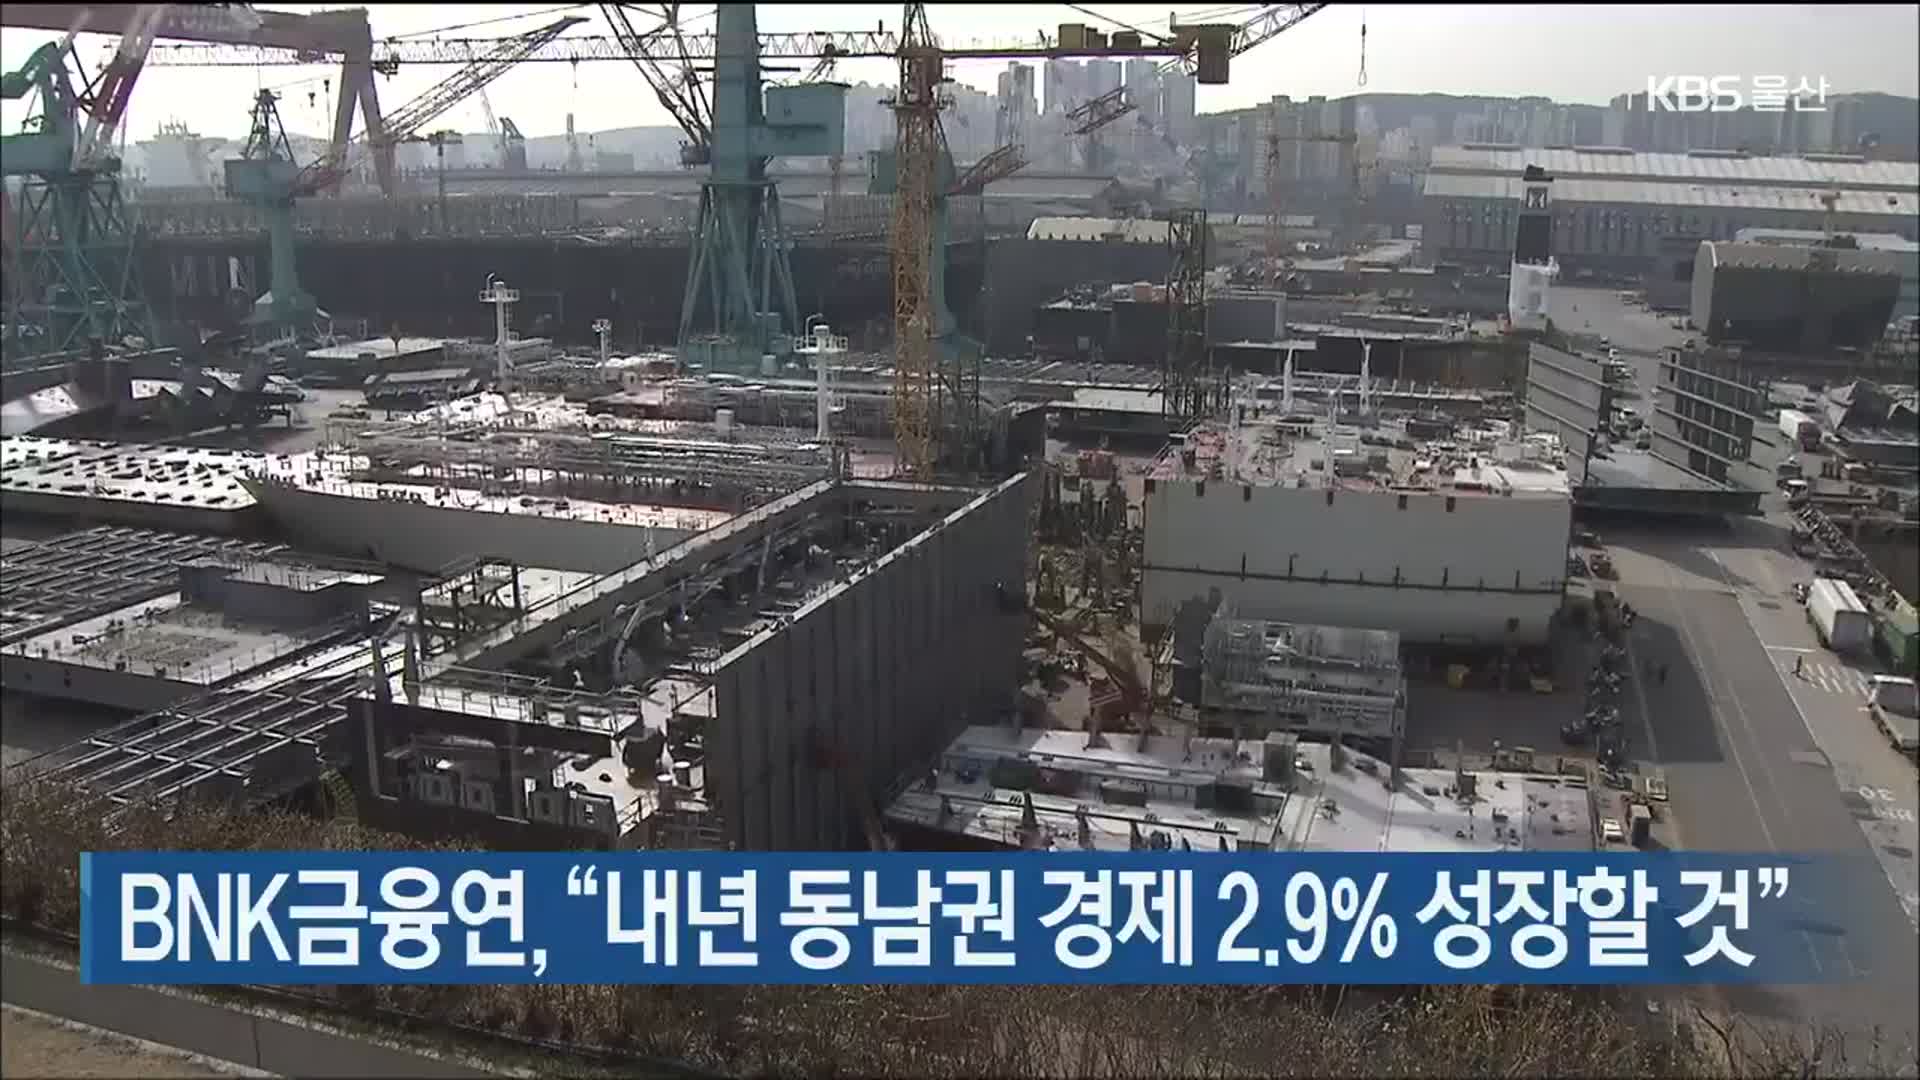 BNK금융연, “내년 동남권 경제 2.9% 성장할 것”